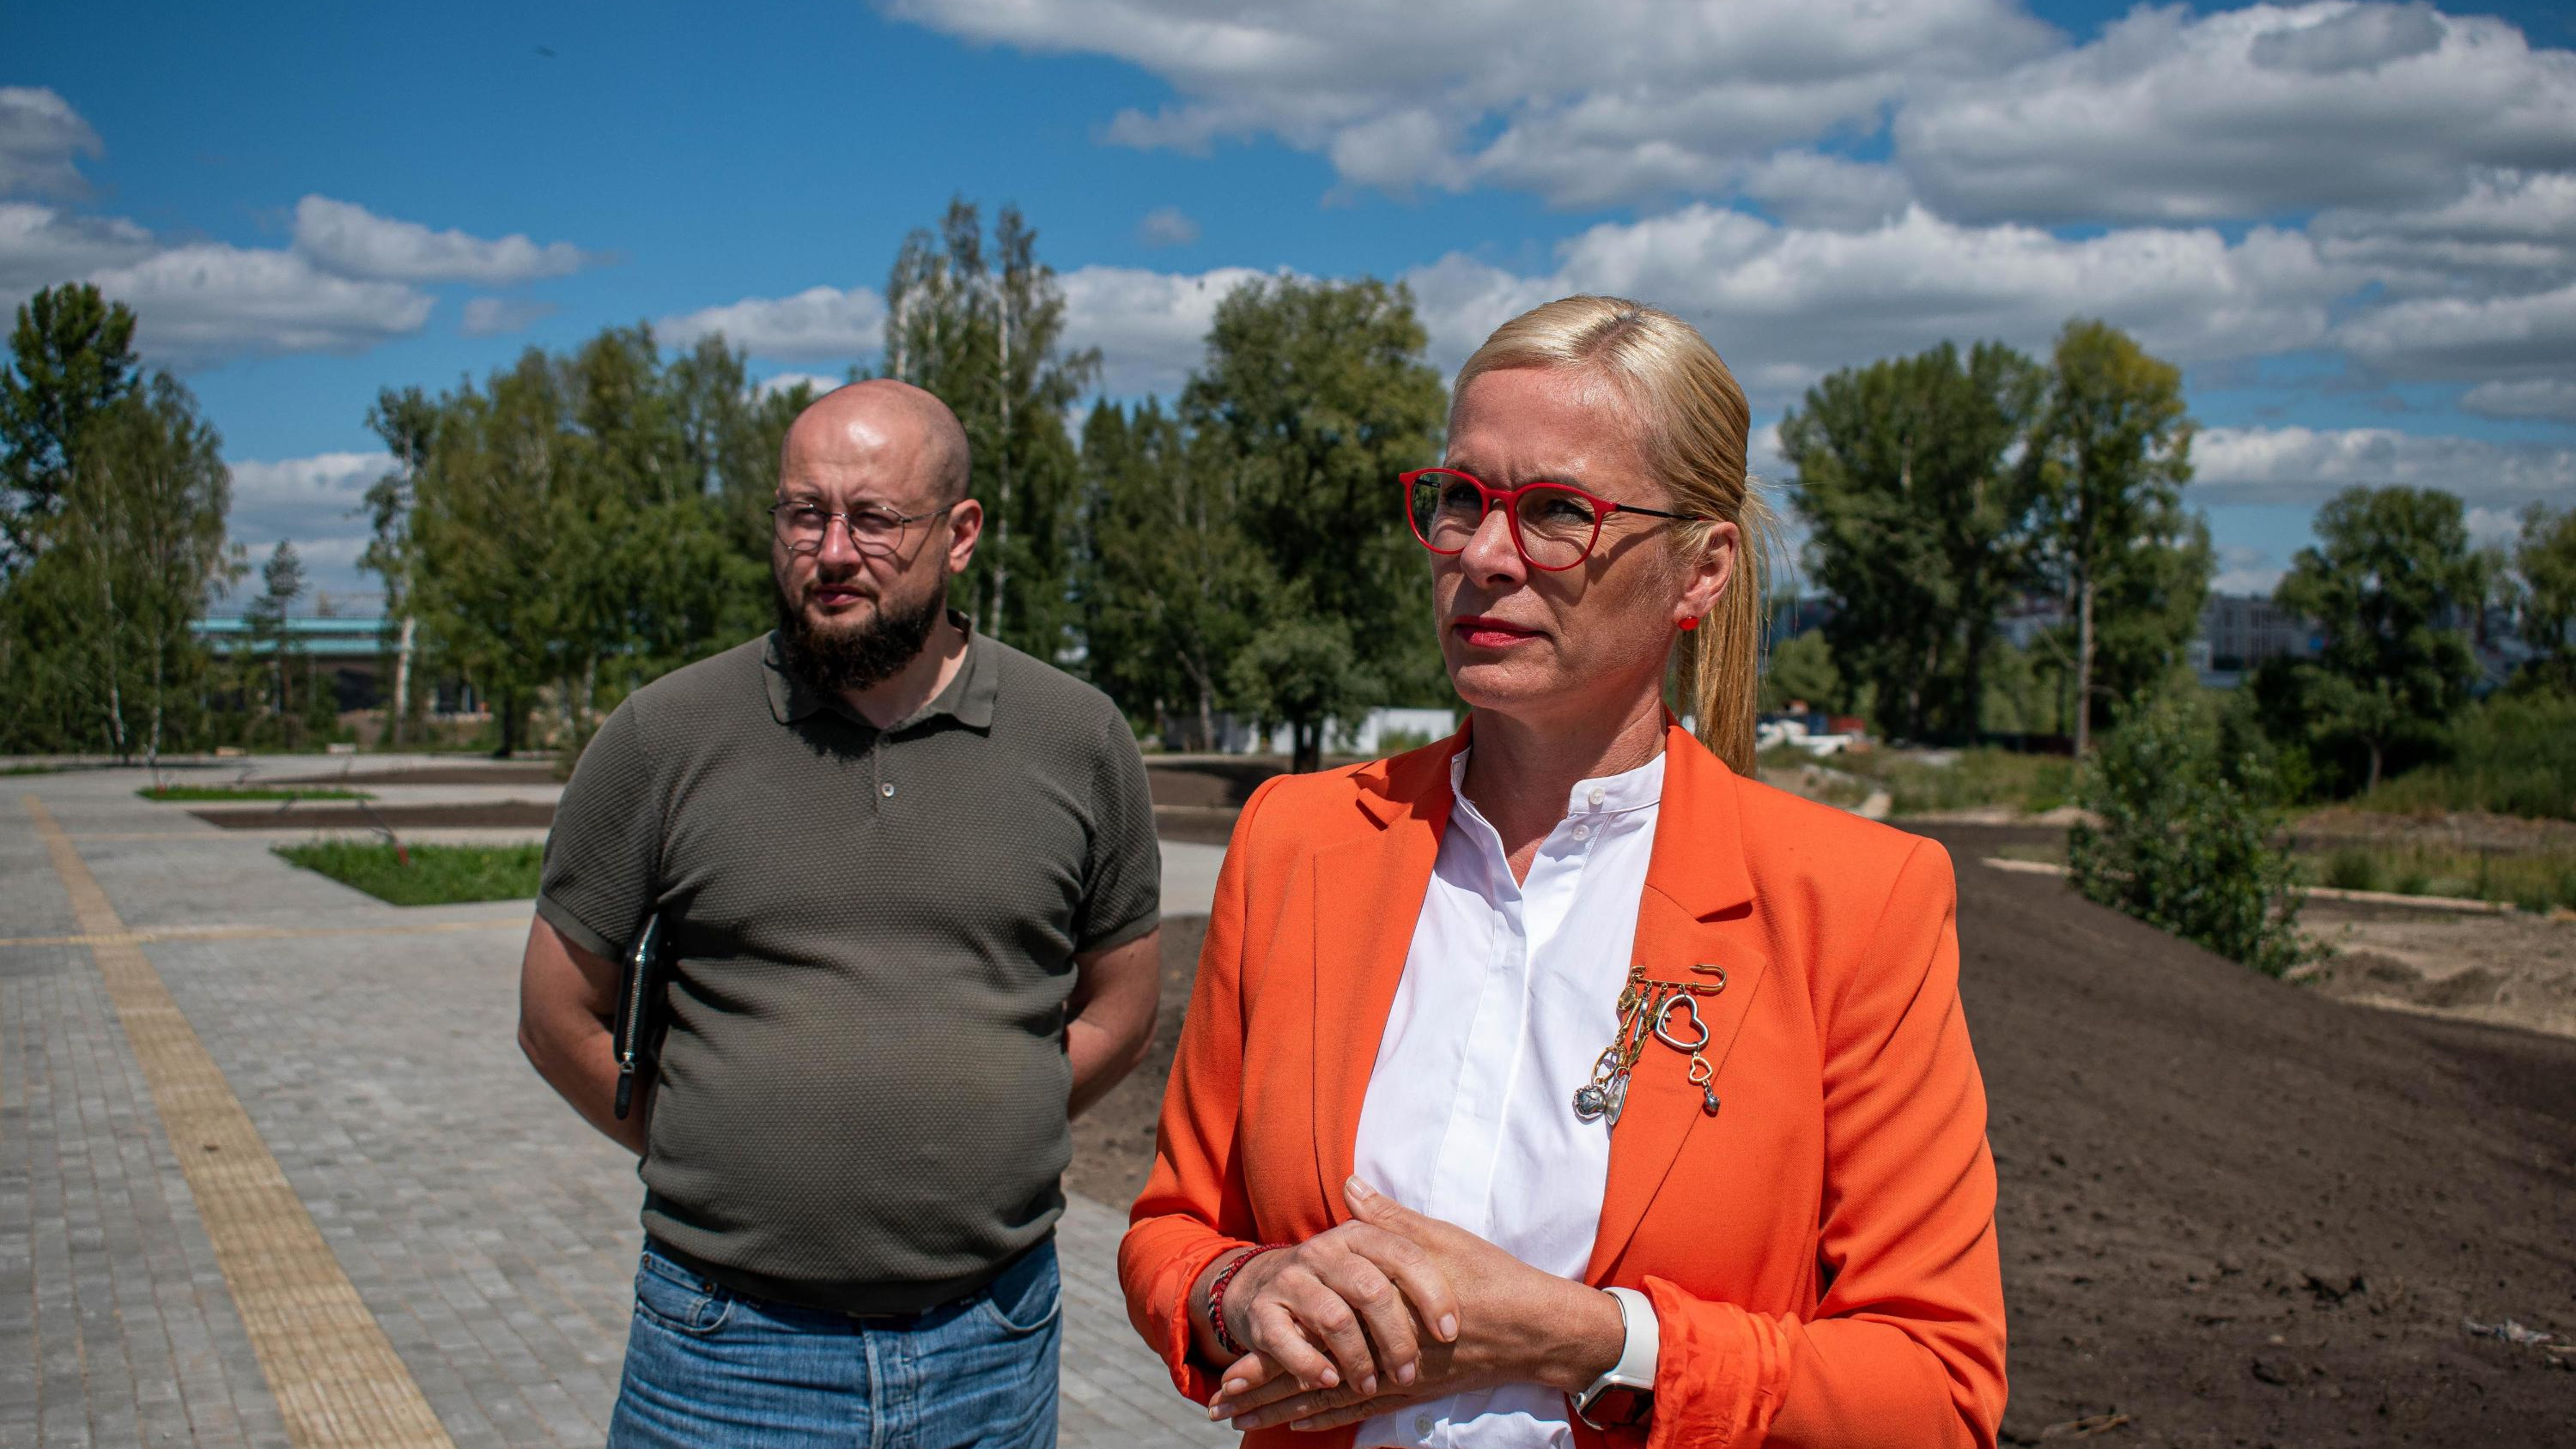 Яркая женщина в политике: Анна Терешкова уходит с должности вице-мэра Новосибирска — чем знаменита чиновница